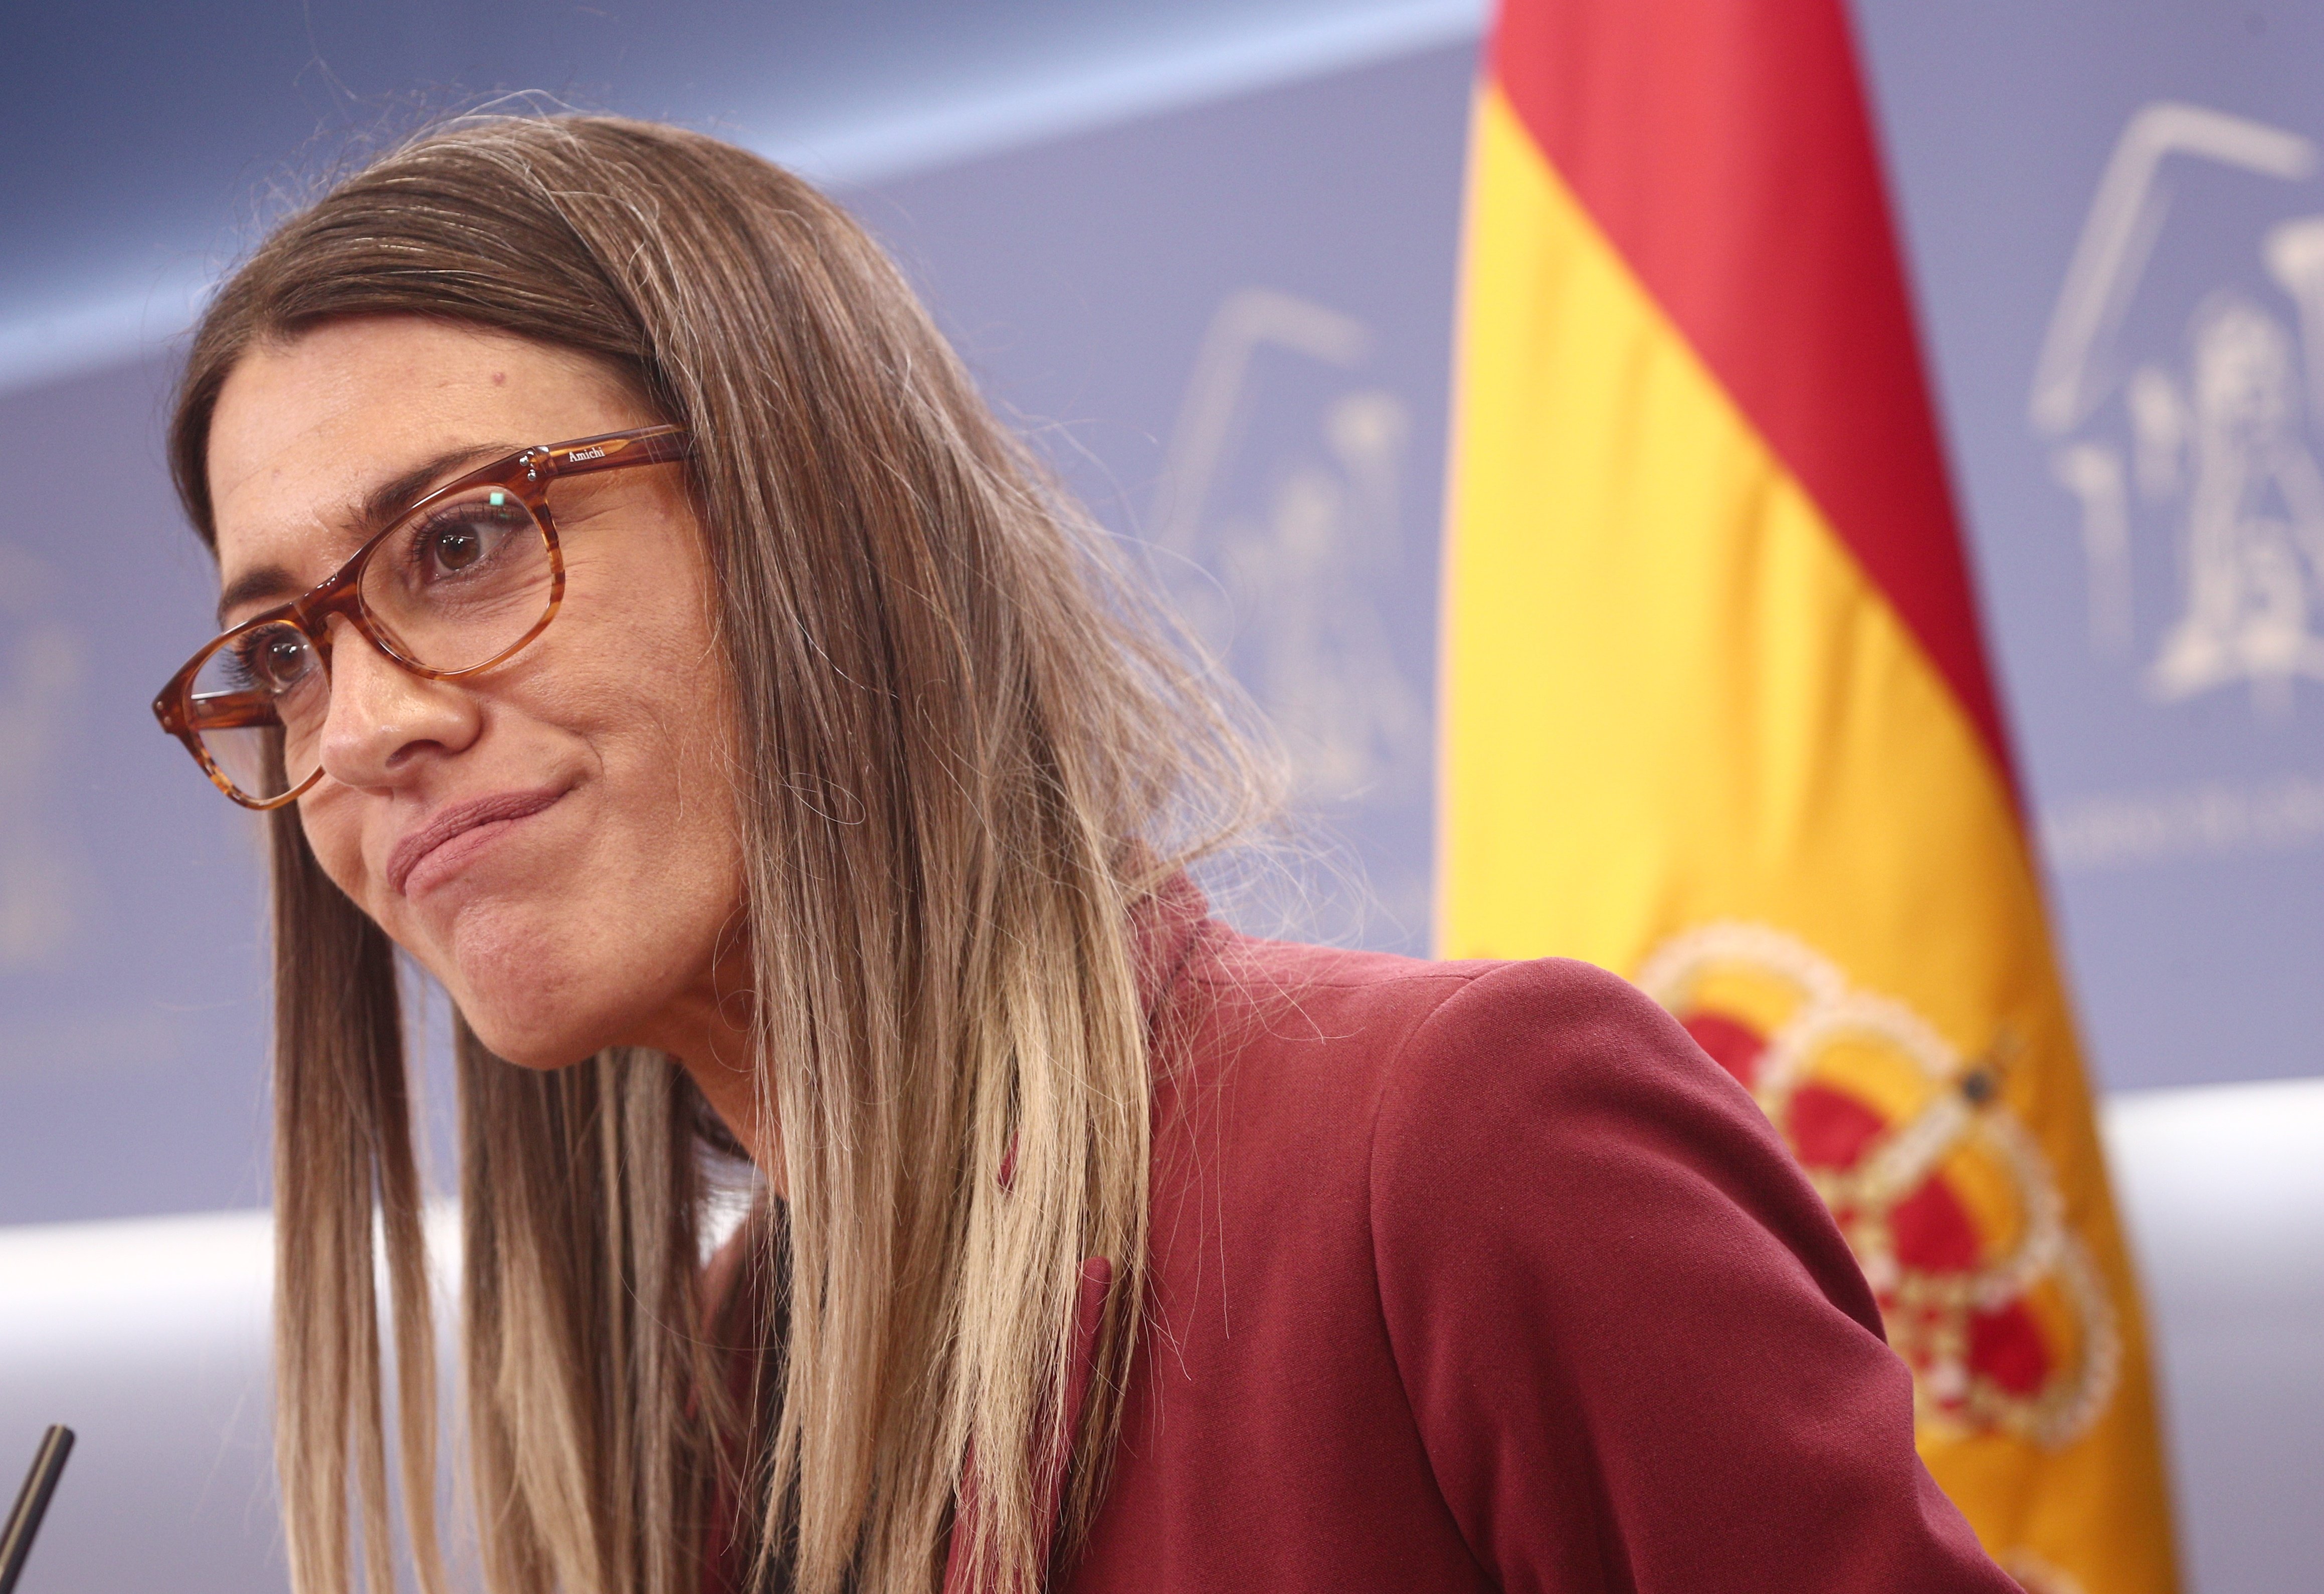 La carregada de Nogueras contra ERC per l'entesa amb el govern espanyol